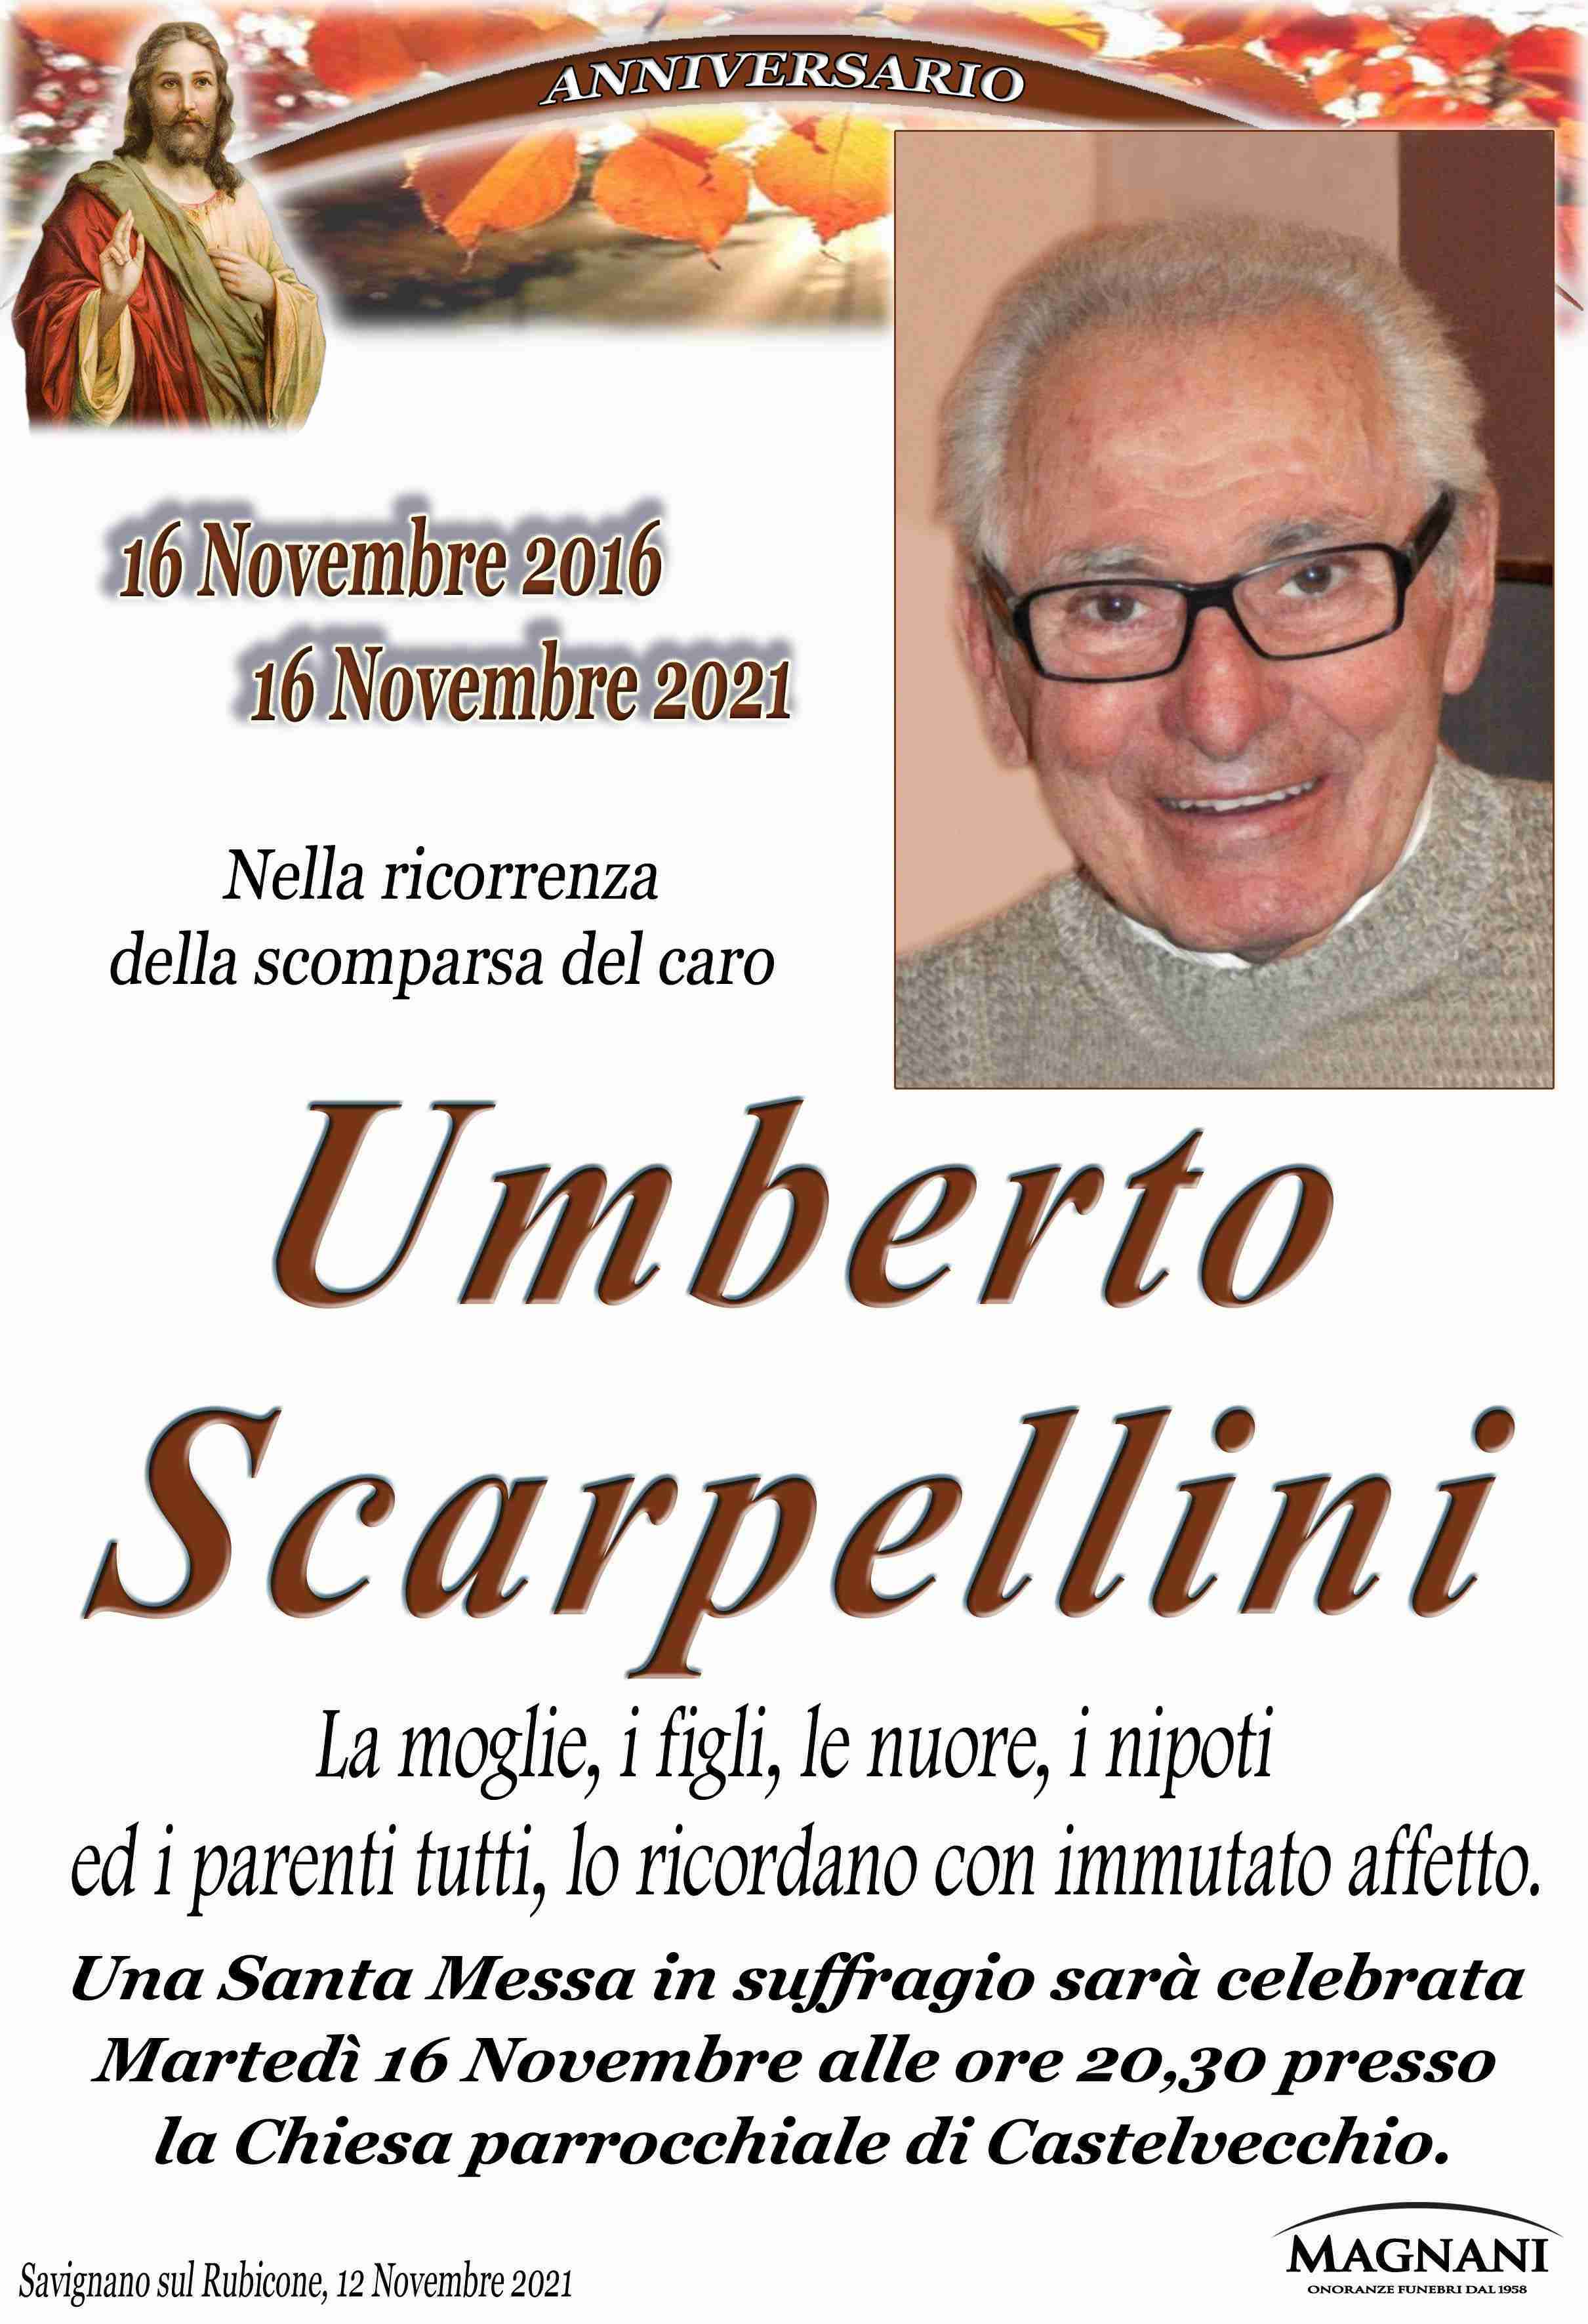 Umberto Scarpellini